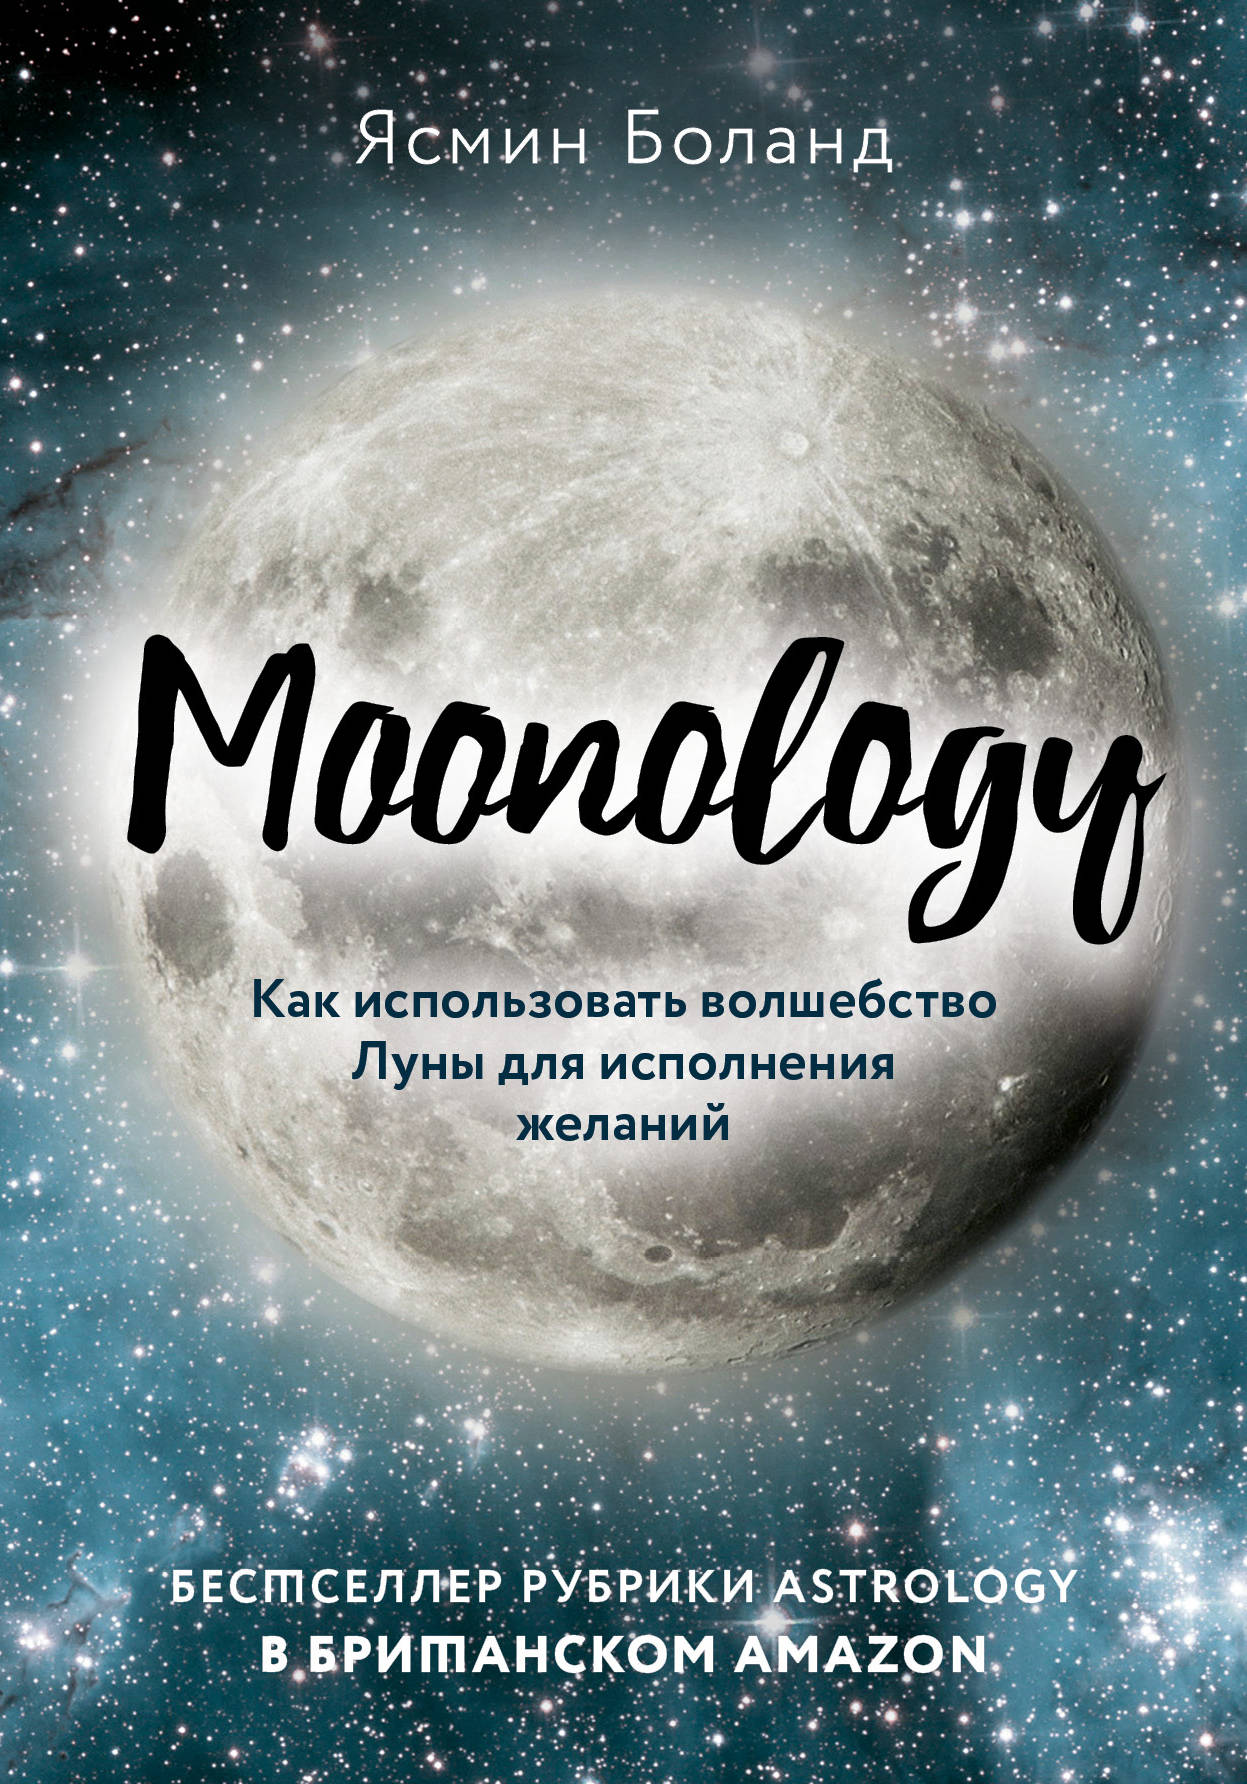  . Moonology.        